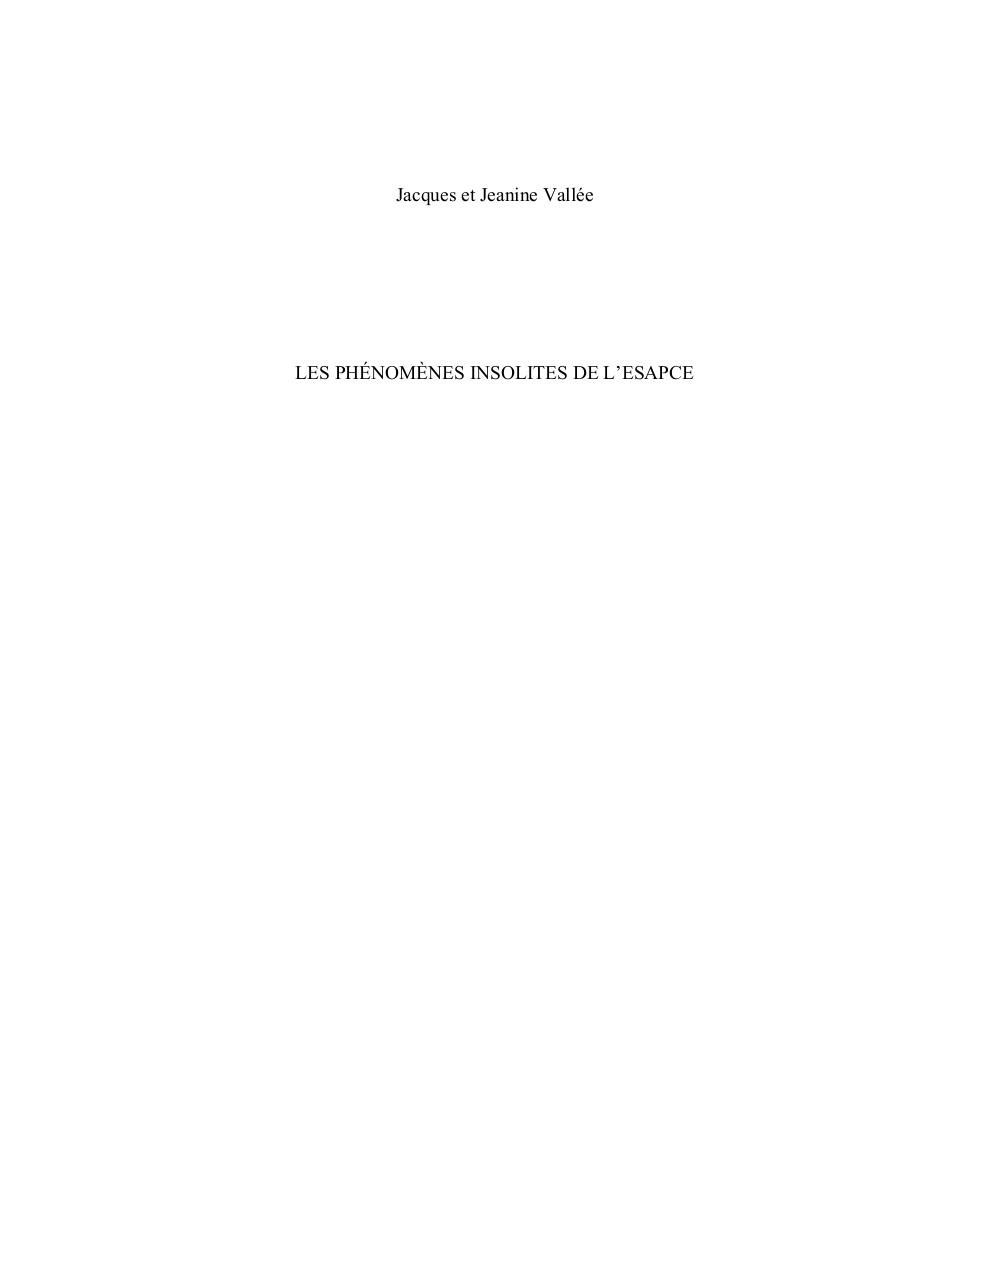 LES PHENOMENES INSOLITES DE LESPACE.pdf - page 1/73